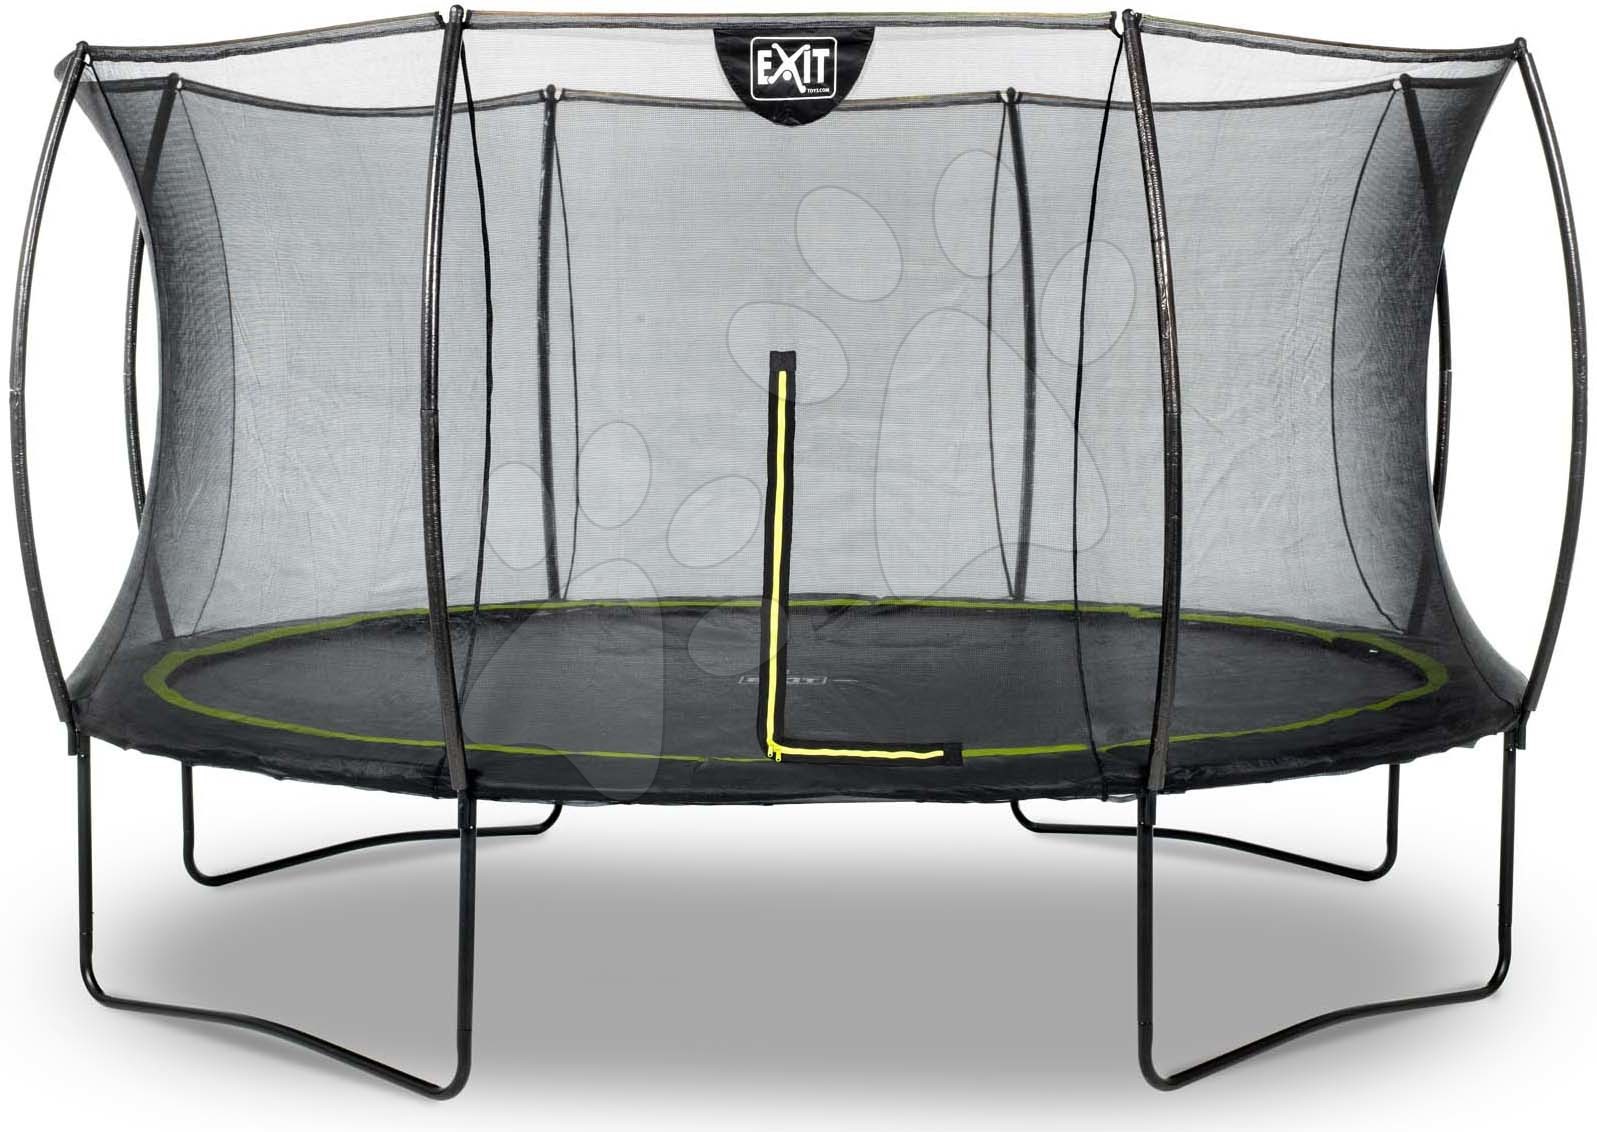 Trampolína s ochrannou sítí Silhouette trampoline Exit Toys kulatá průměr 366 cm černá